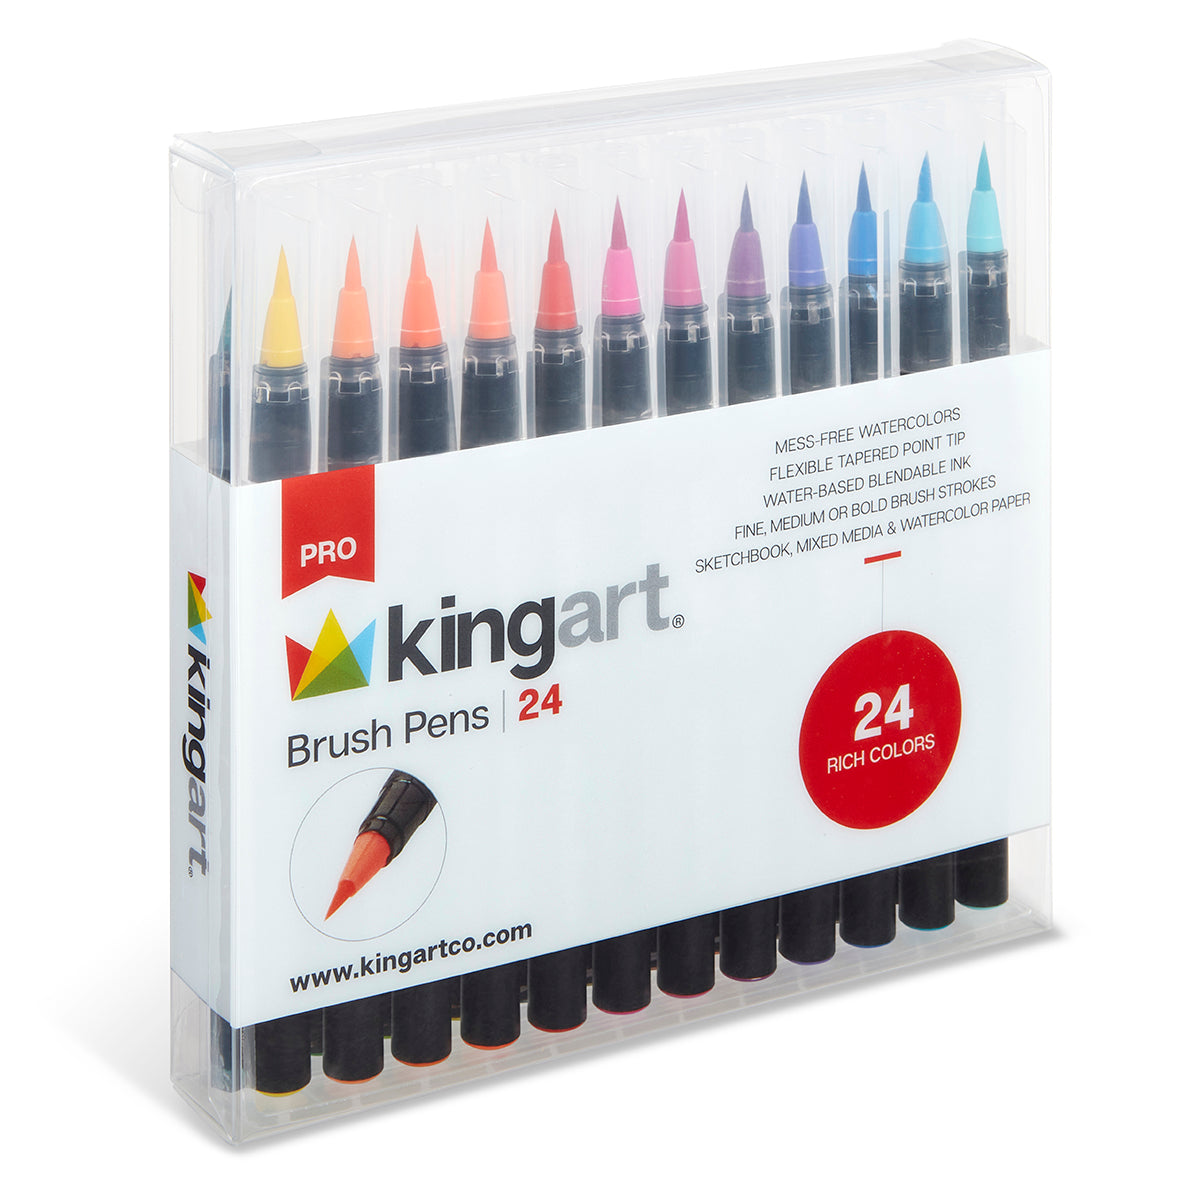 Kingart Metallic Watercolor Painting 25 Pc. Set - Pan Watercolors, Pencils, Brushes and Paper